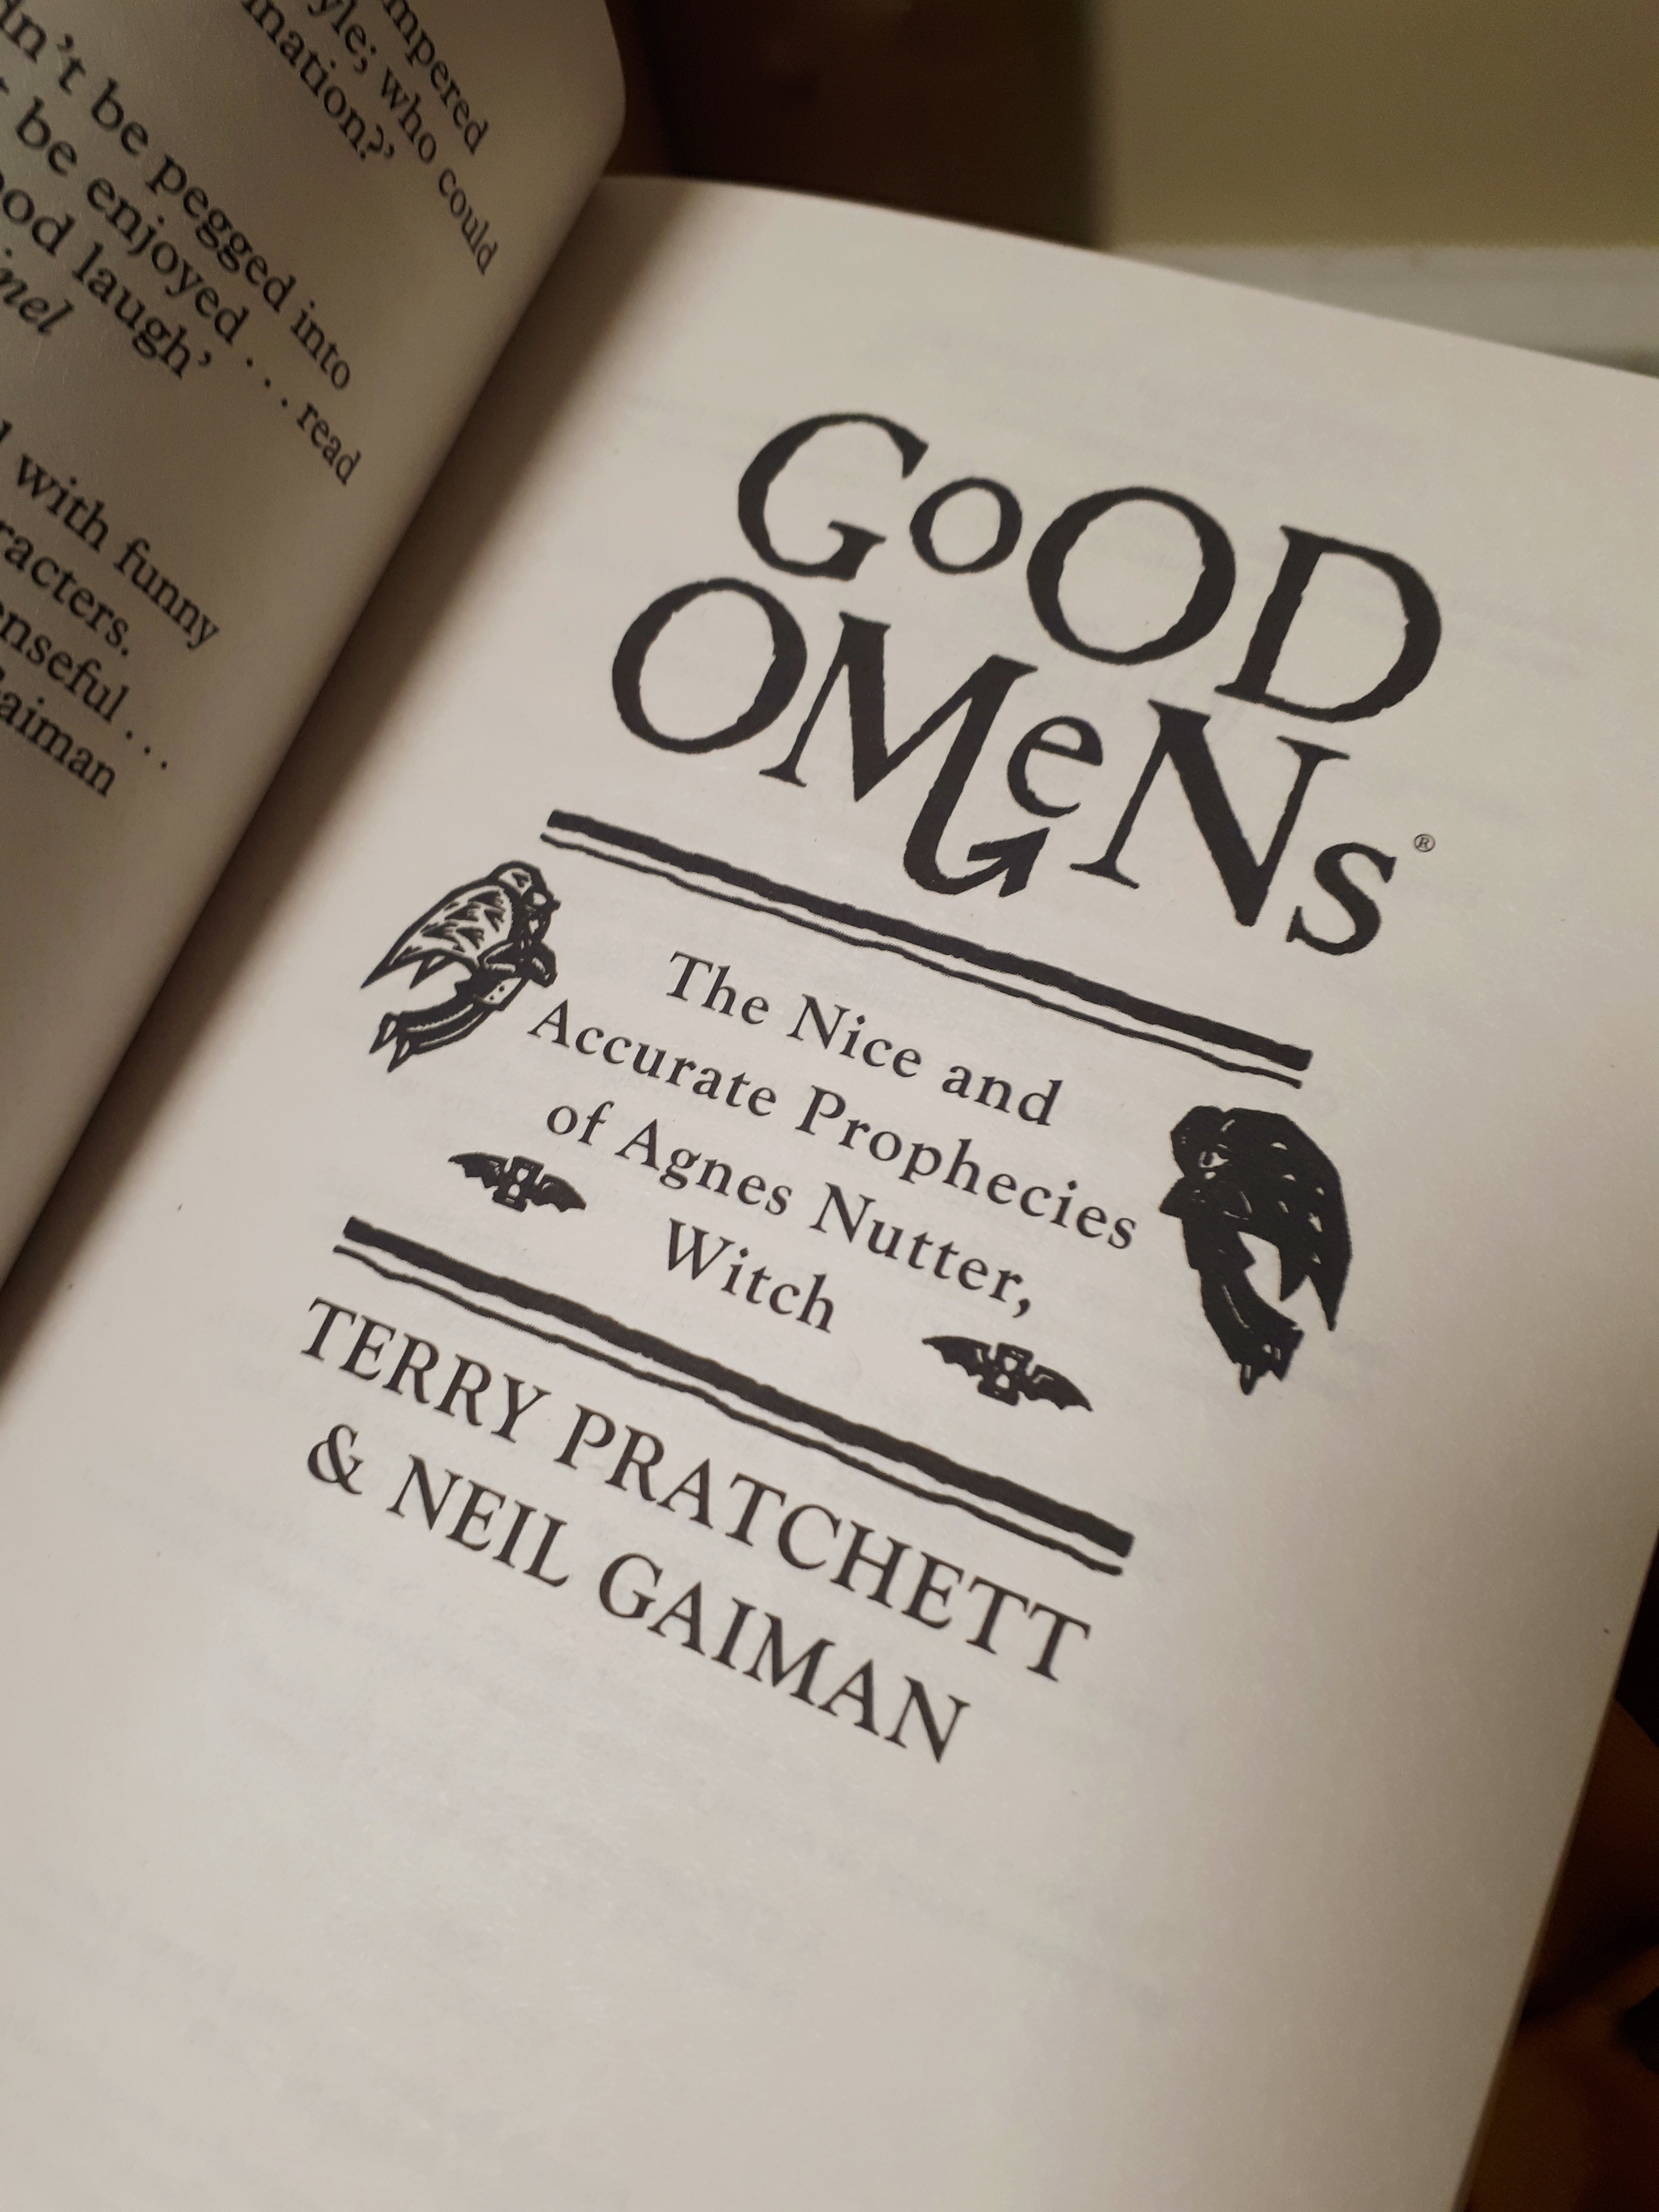 Inside cover of Good Omens - Terry Pratchett & Neil Gaiman